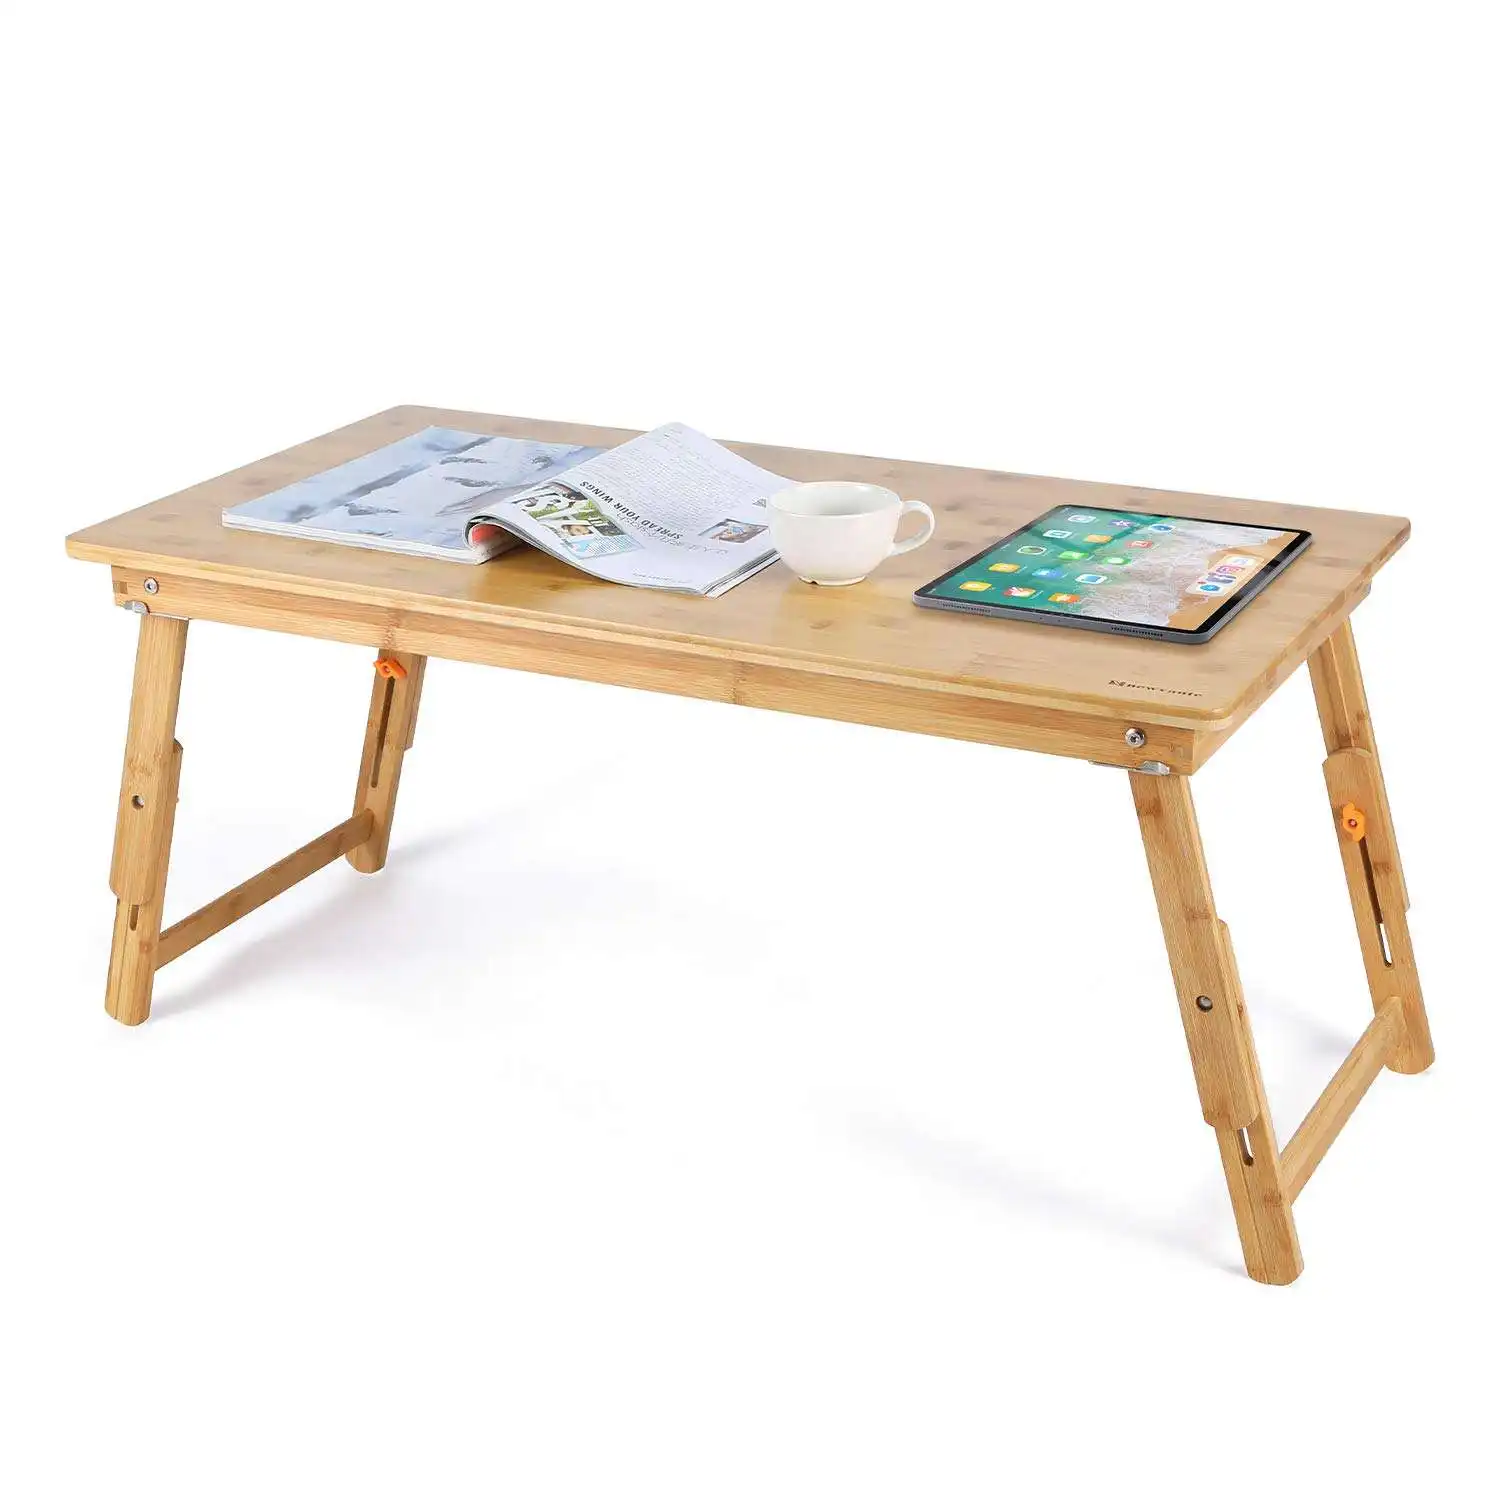 Meja bambu, nampan kopi rendah ukuran besar untuk Sarapan, melayani sarapan, dengan kaki lipat dapat disesuaikan